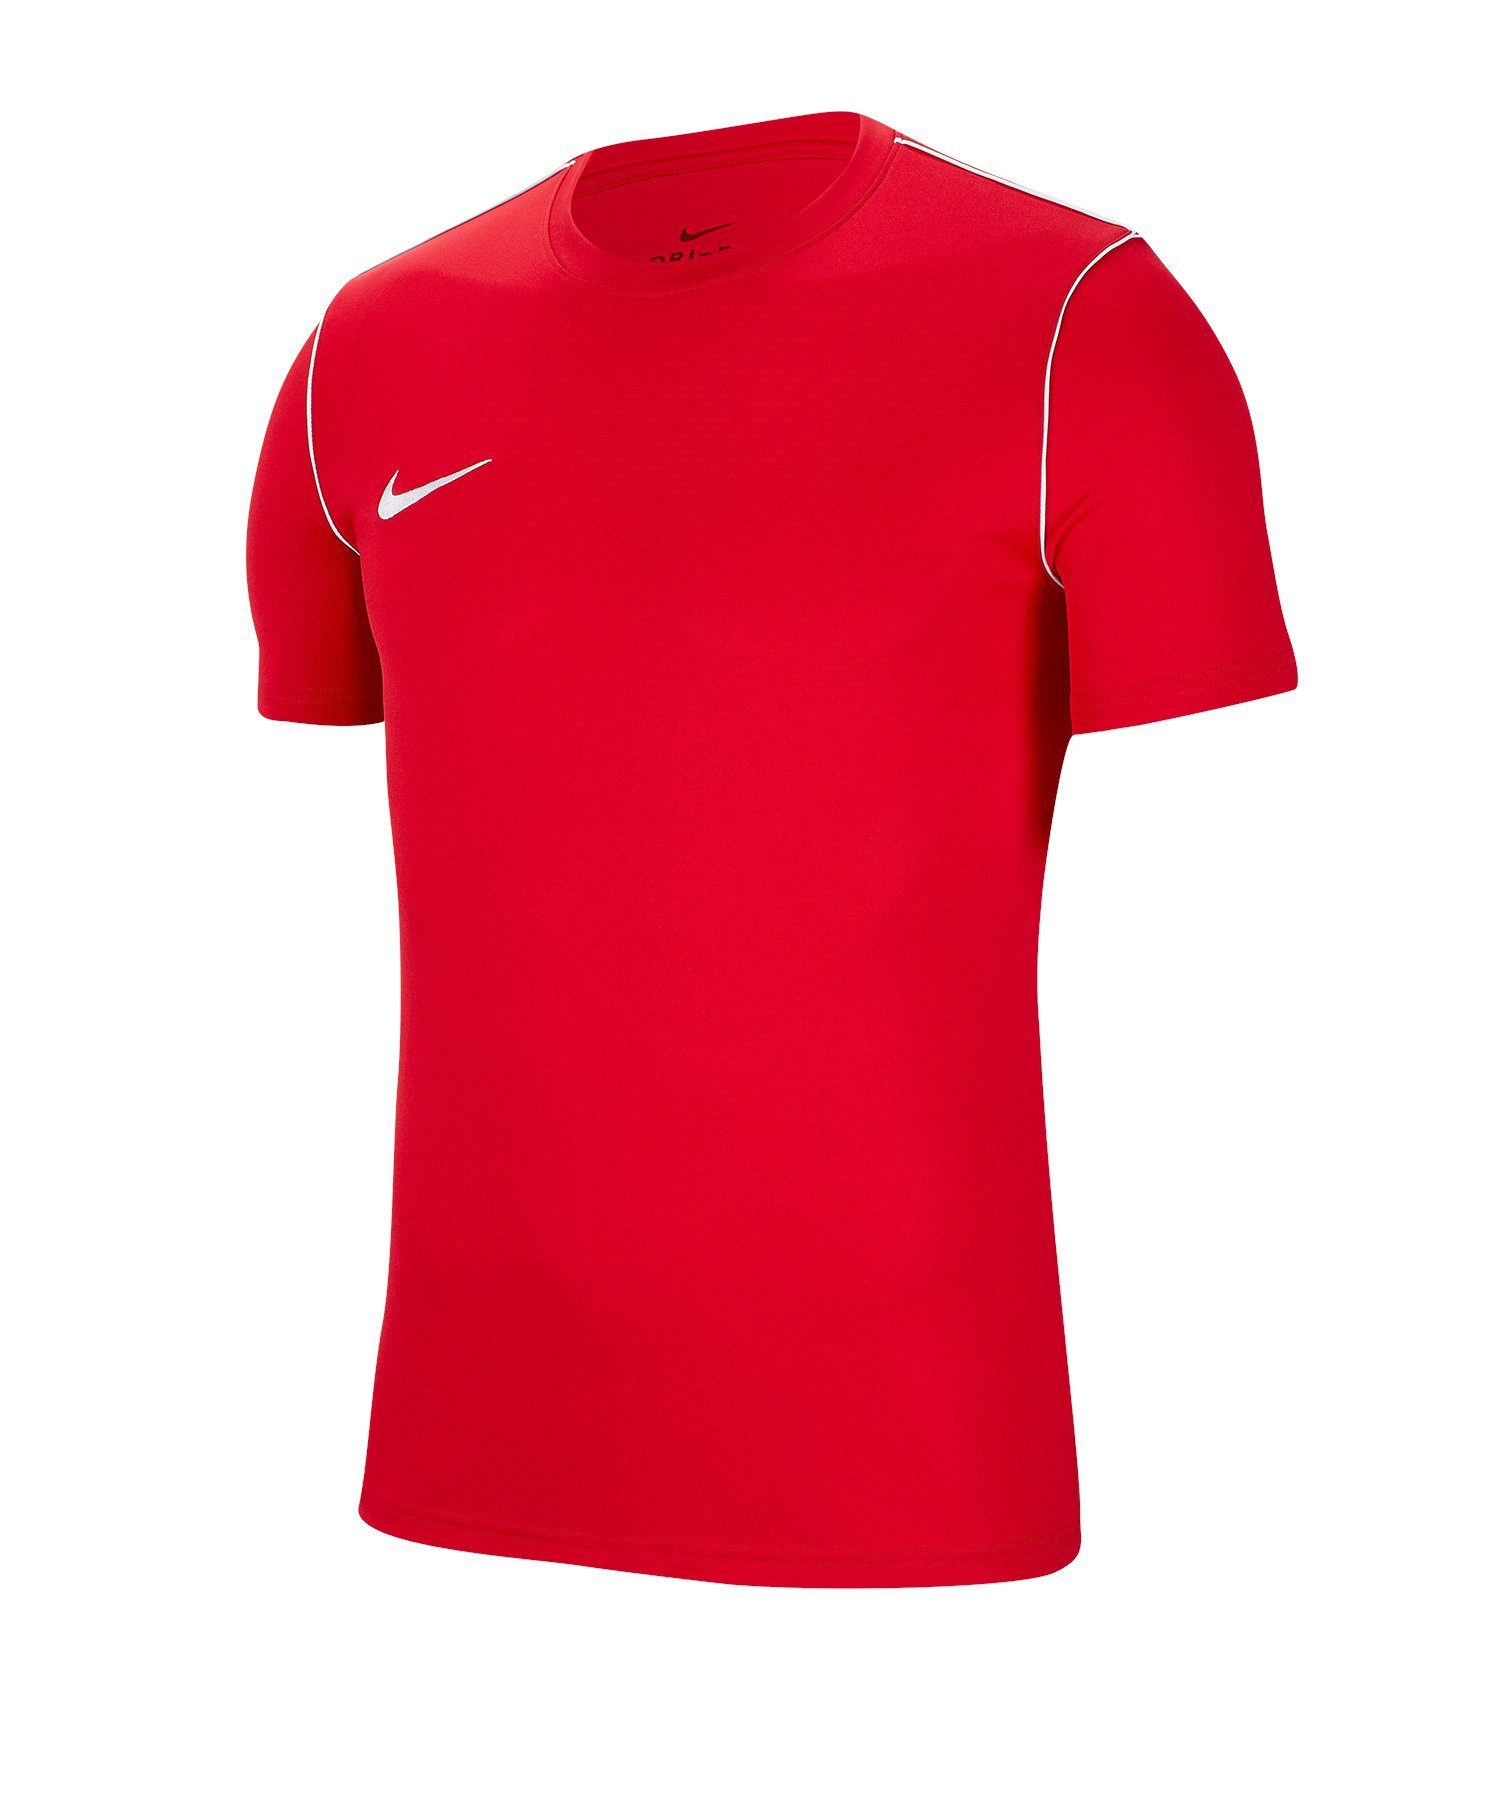 Nike default Training T-Shirt 20 Shirt Park rot